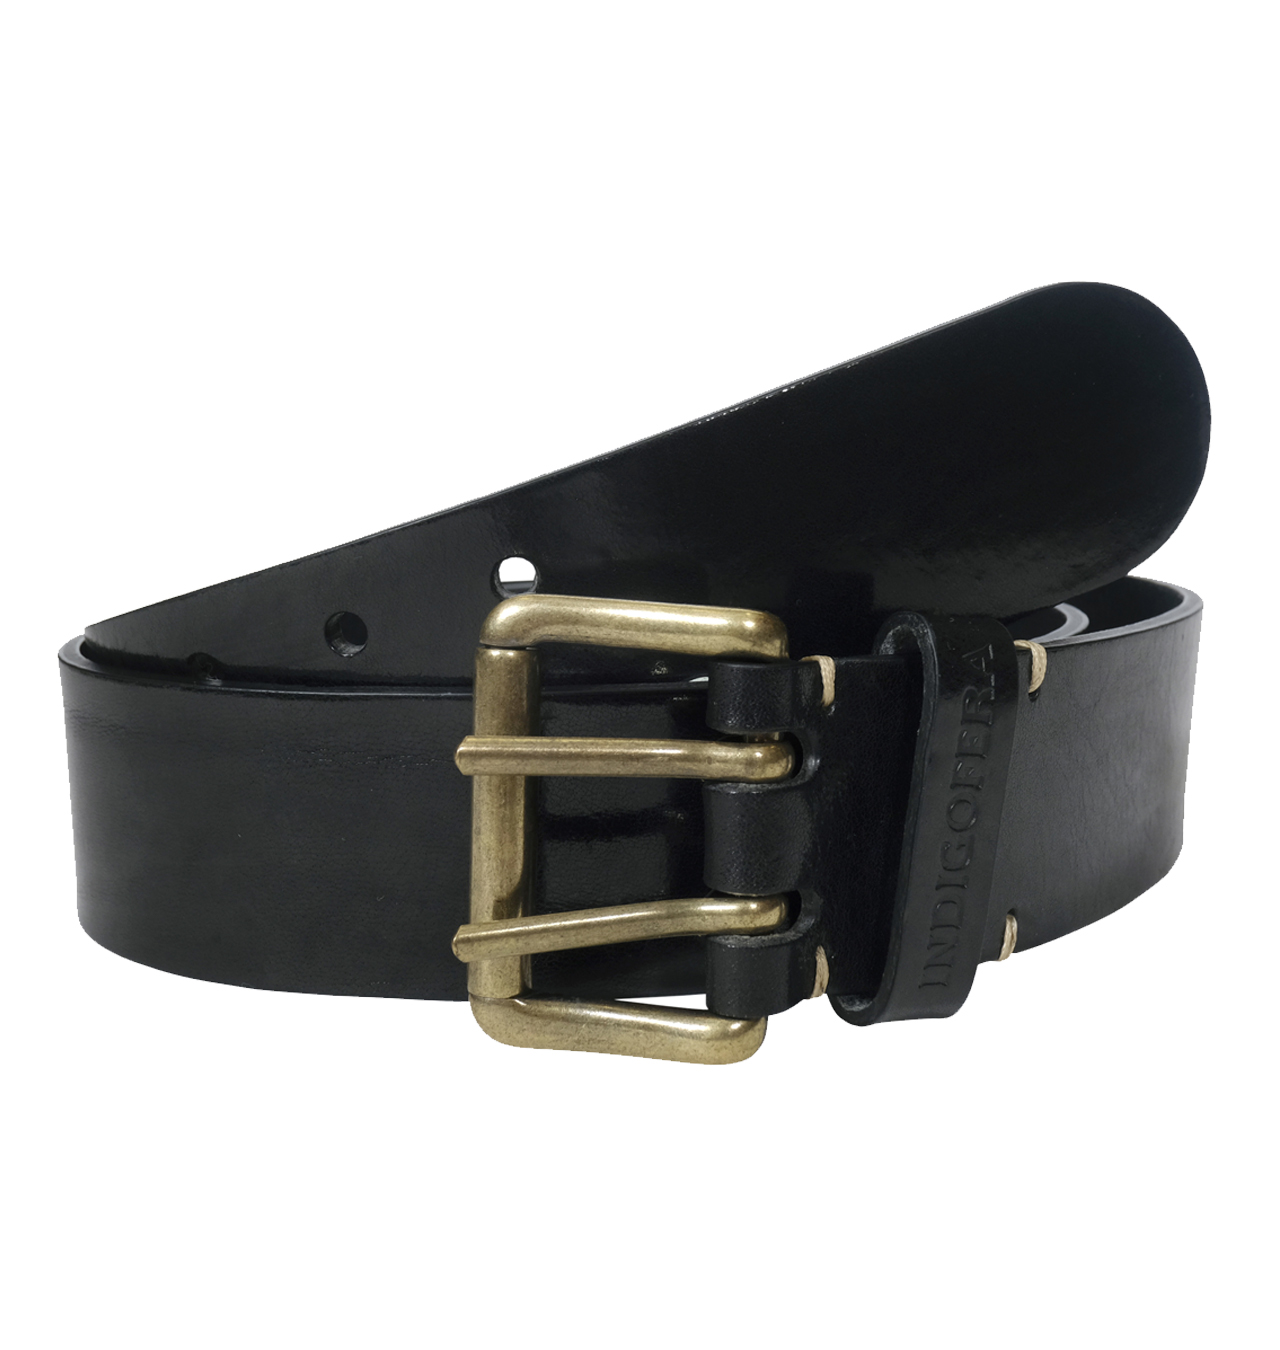 Indigofera---Danko-Leather-Belt-2-prong---Black1